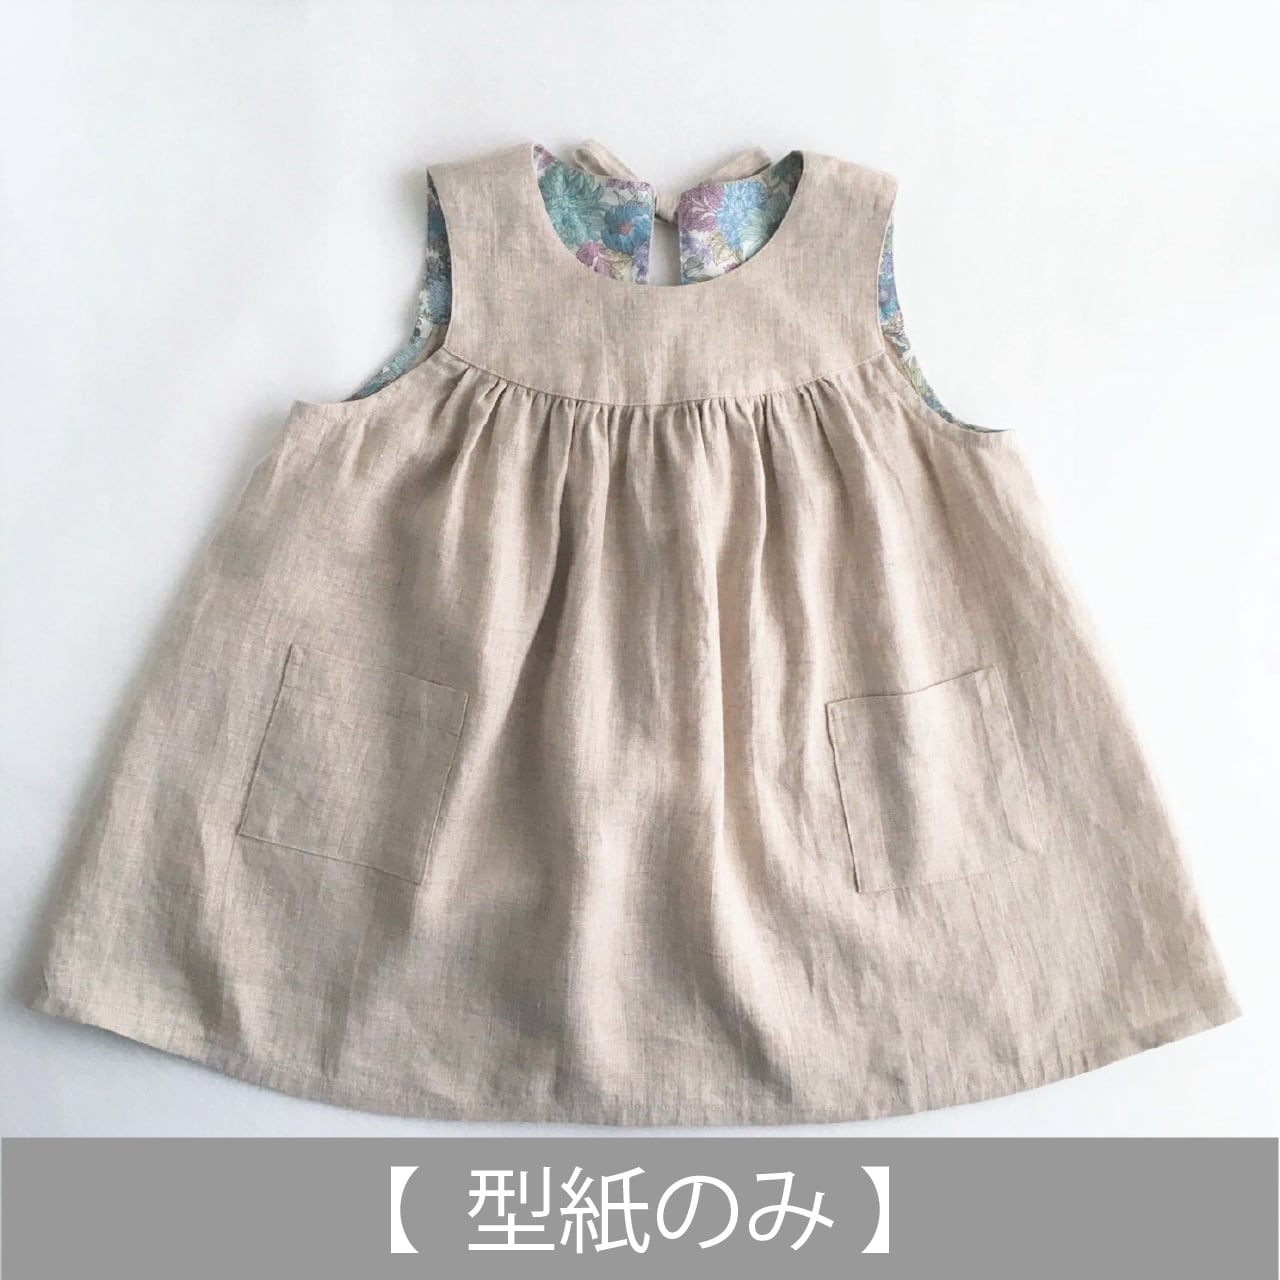 エプロンワンピース 型紙のみ Op 24 子供服の型紙ショップ Tsukuro ツクロ